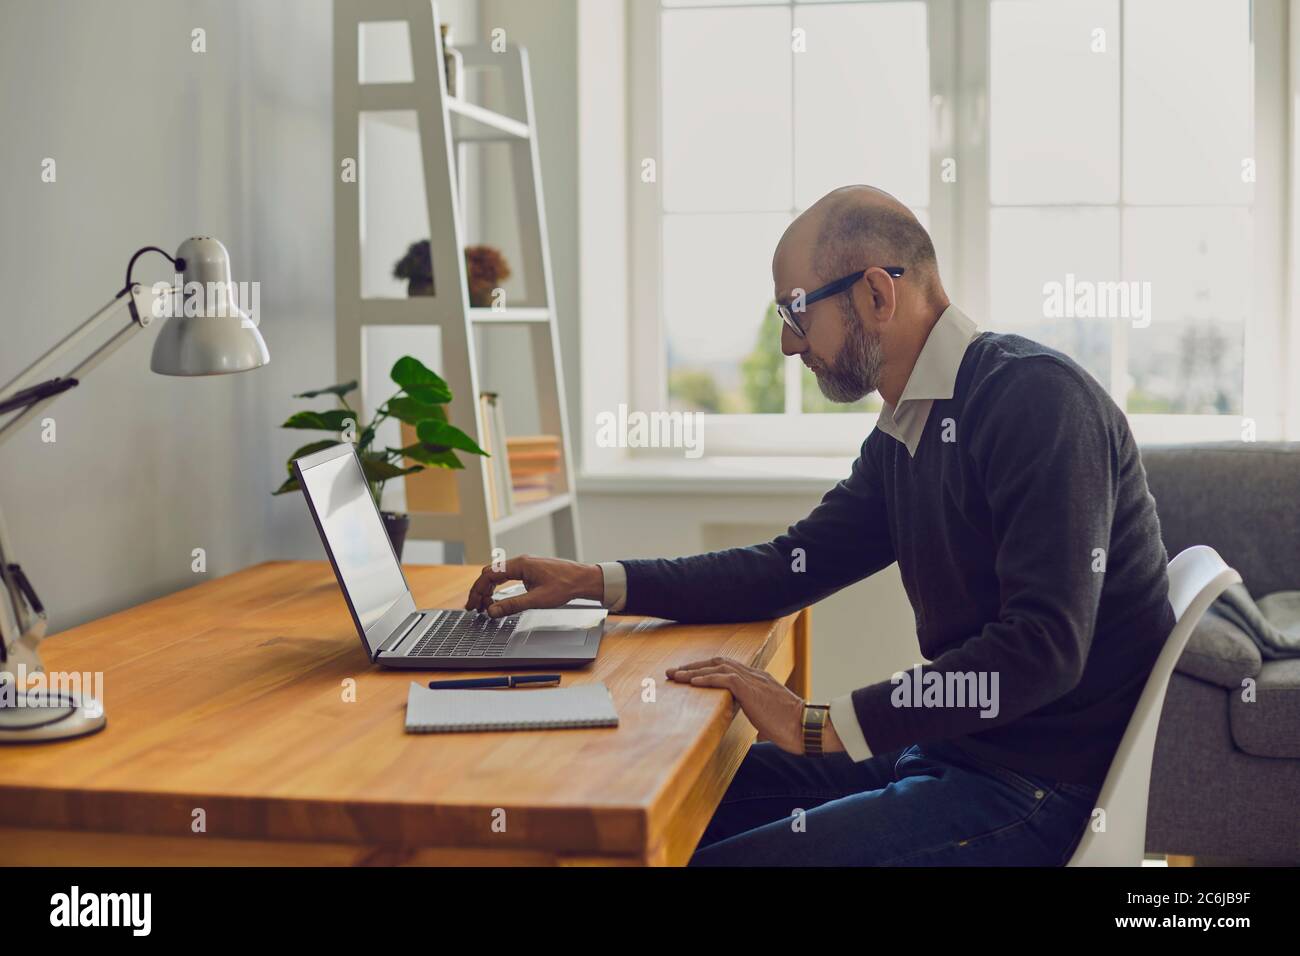 Travailler en ligne. Homme expérimenté tapant du texte sur un ordinateur portable tout en étant assis à une table dans une pièce à la maison. Banque D'Images